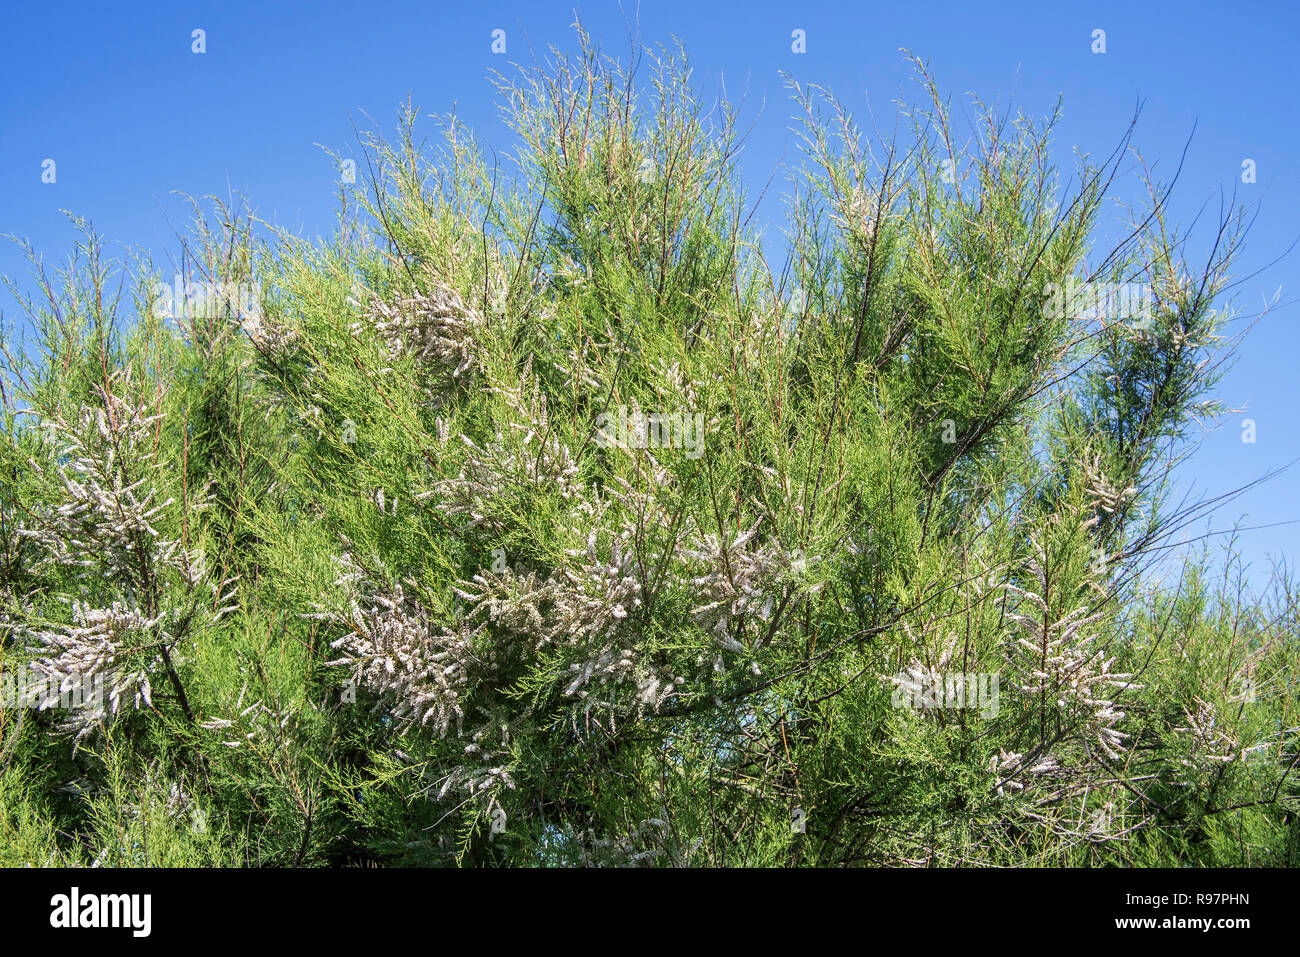 Tamaris (Tamarix africana de l'Afrique), herbacées et arbustives twiggy espèces introduites envahissantes croissant le long de la côte, France Banque D'Images